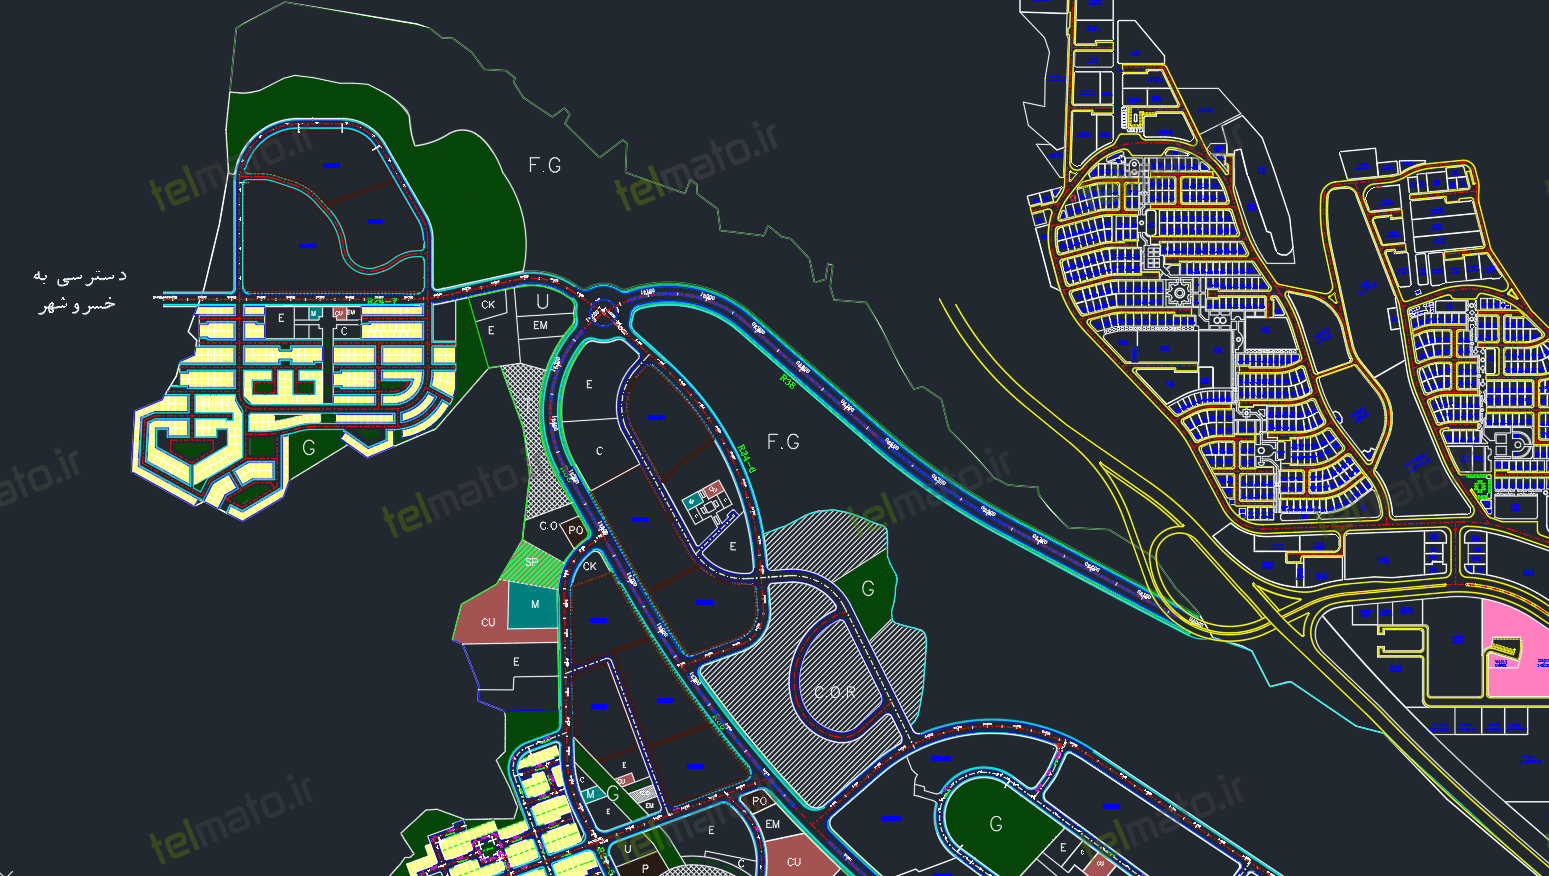 دانلود نقشه کامل اتوکد شهر جدید سهند تبریز با فرمت DWG + فایل autocad